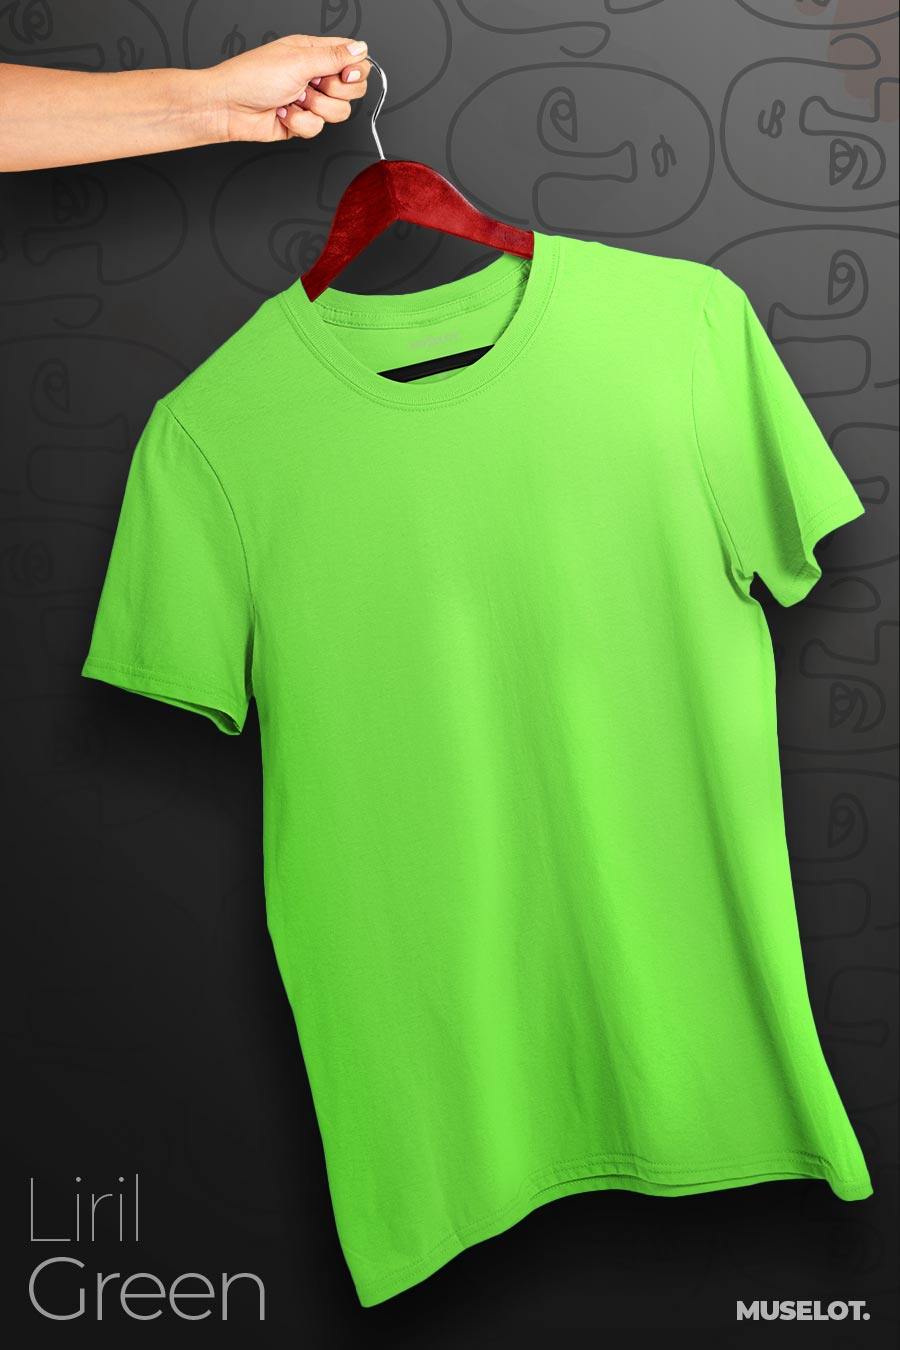 Unisex Plus size t shirts in light colors, Sizes XL - 5XL